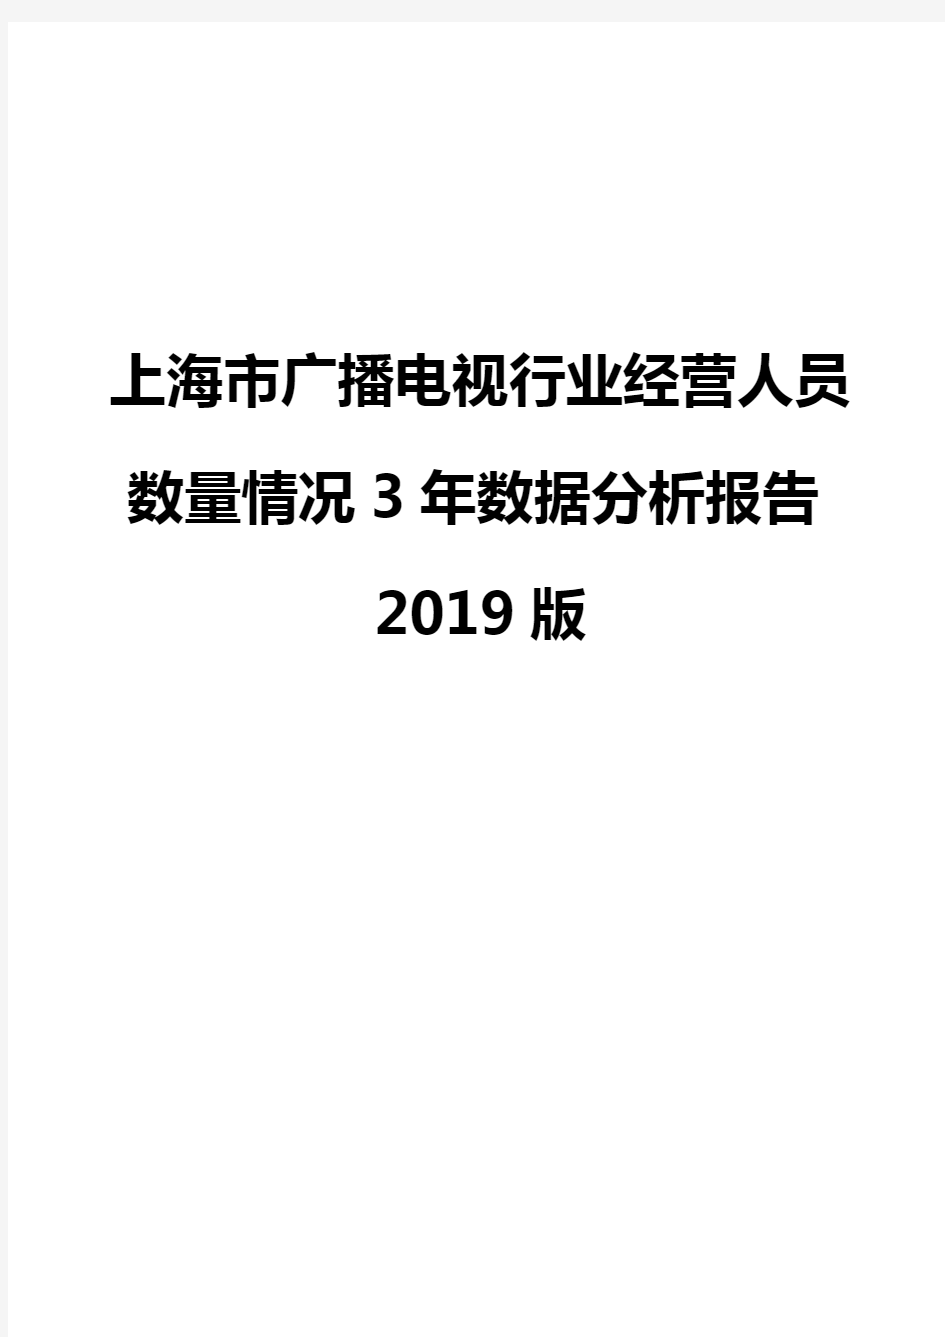 上海市广播电视行业经营人员数量情况3年数据分析报告2019版